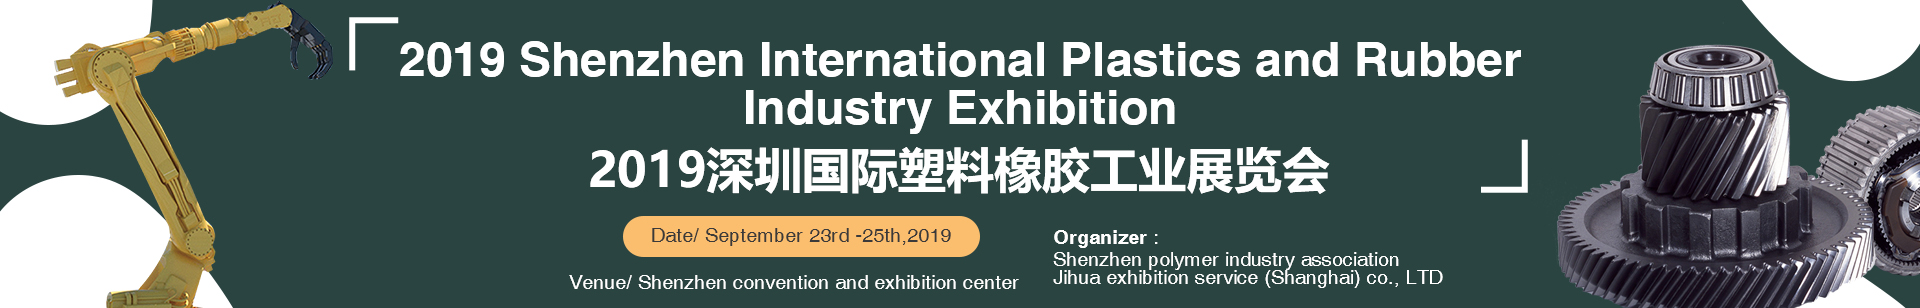 2019 Shenzhen International Plastics and Rubber Industry Exhibition 